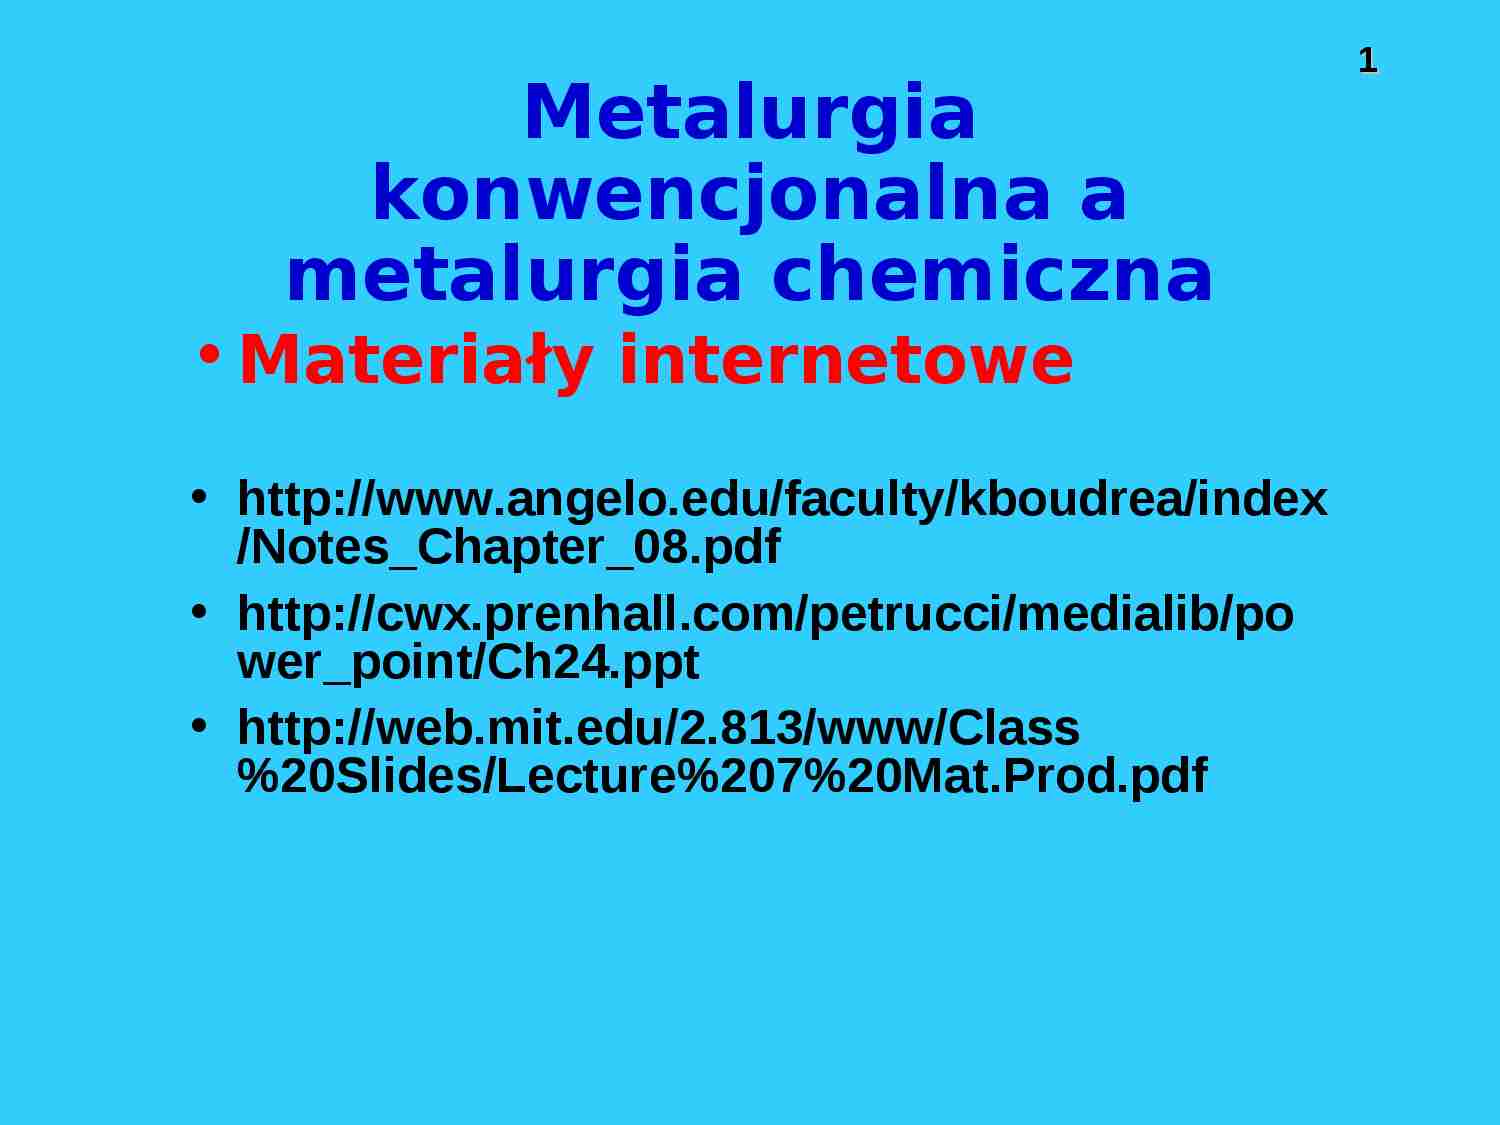 Metalurgia konwencjonalna a metalurgia chemiczna - prezentacja - strona 1